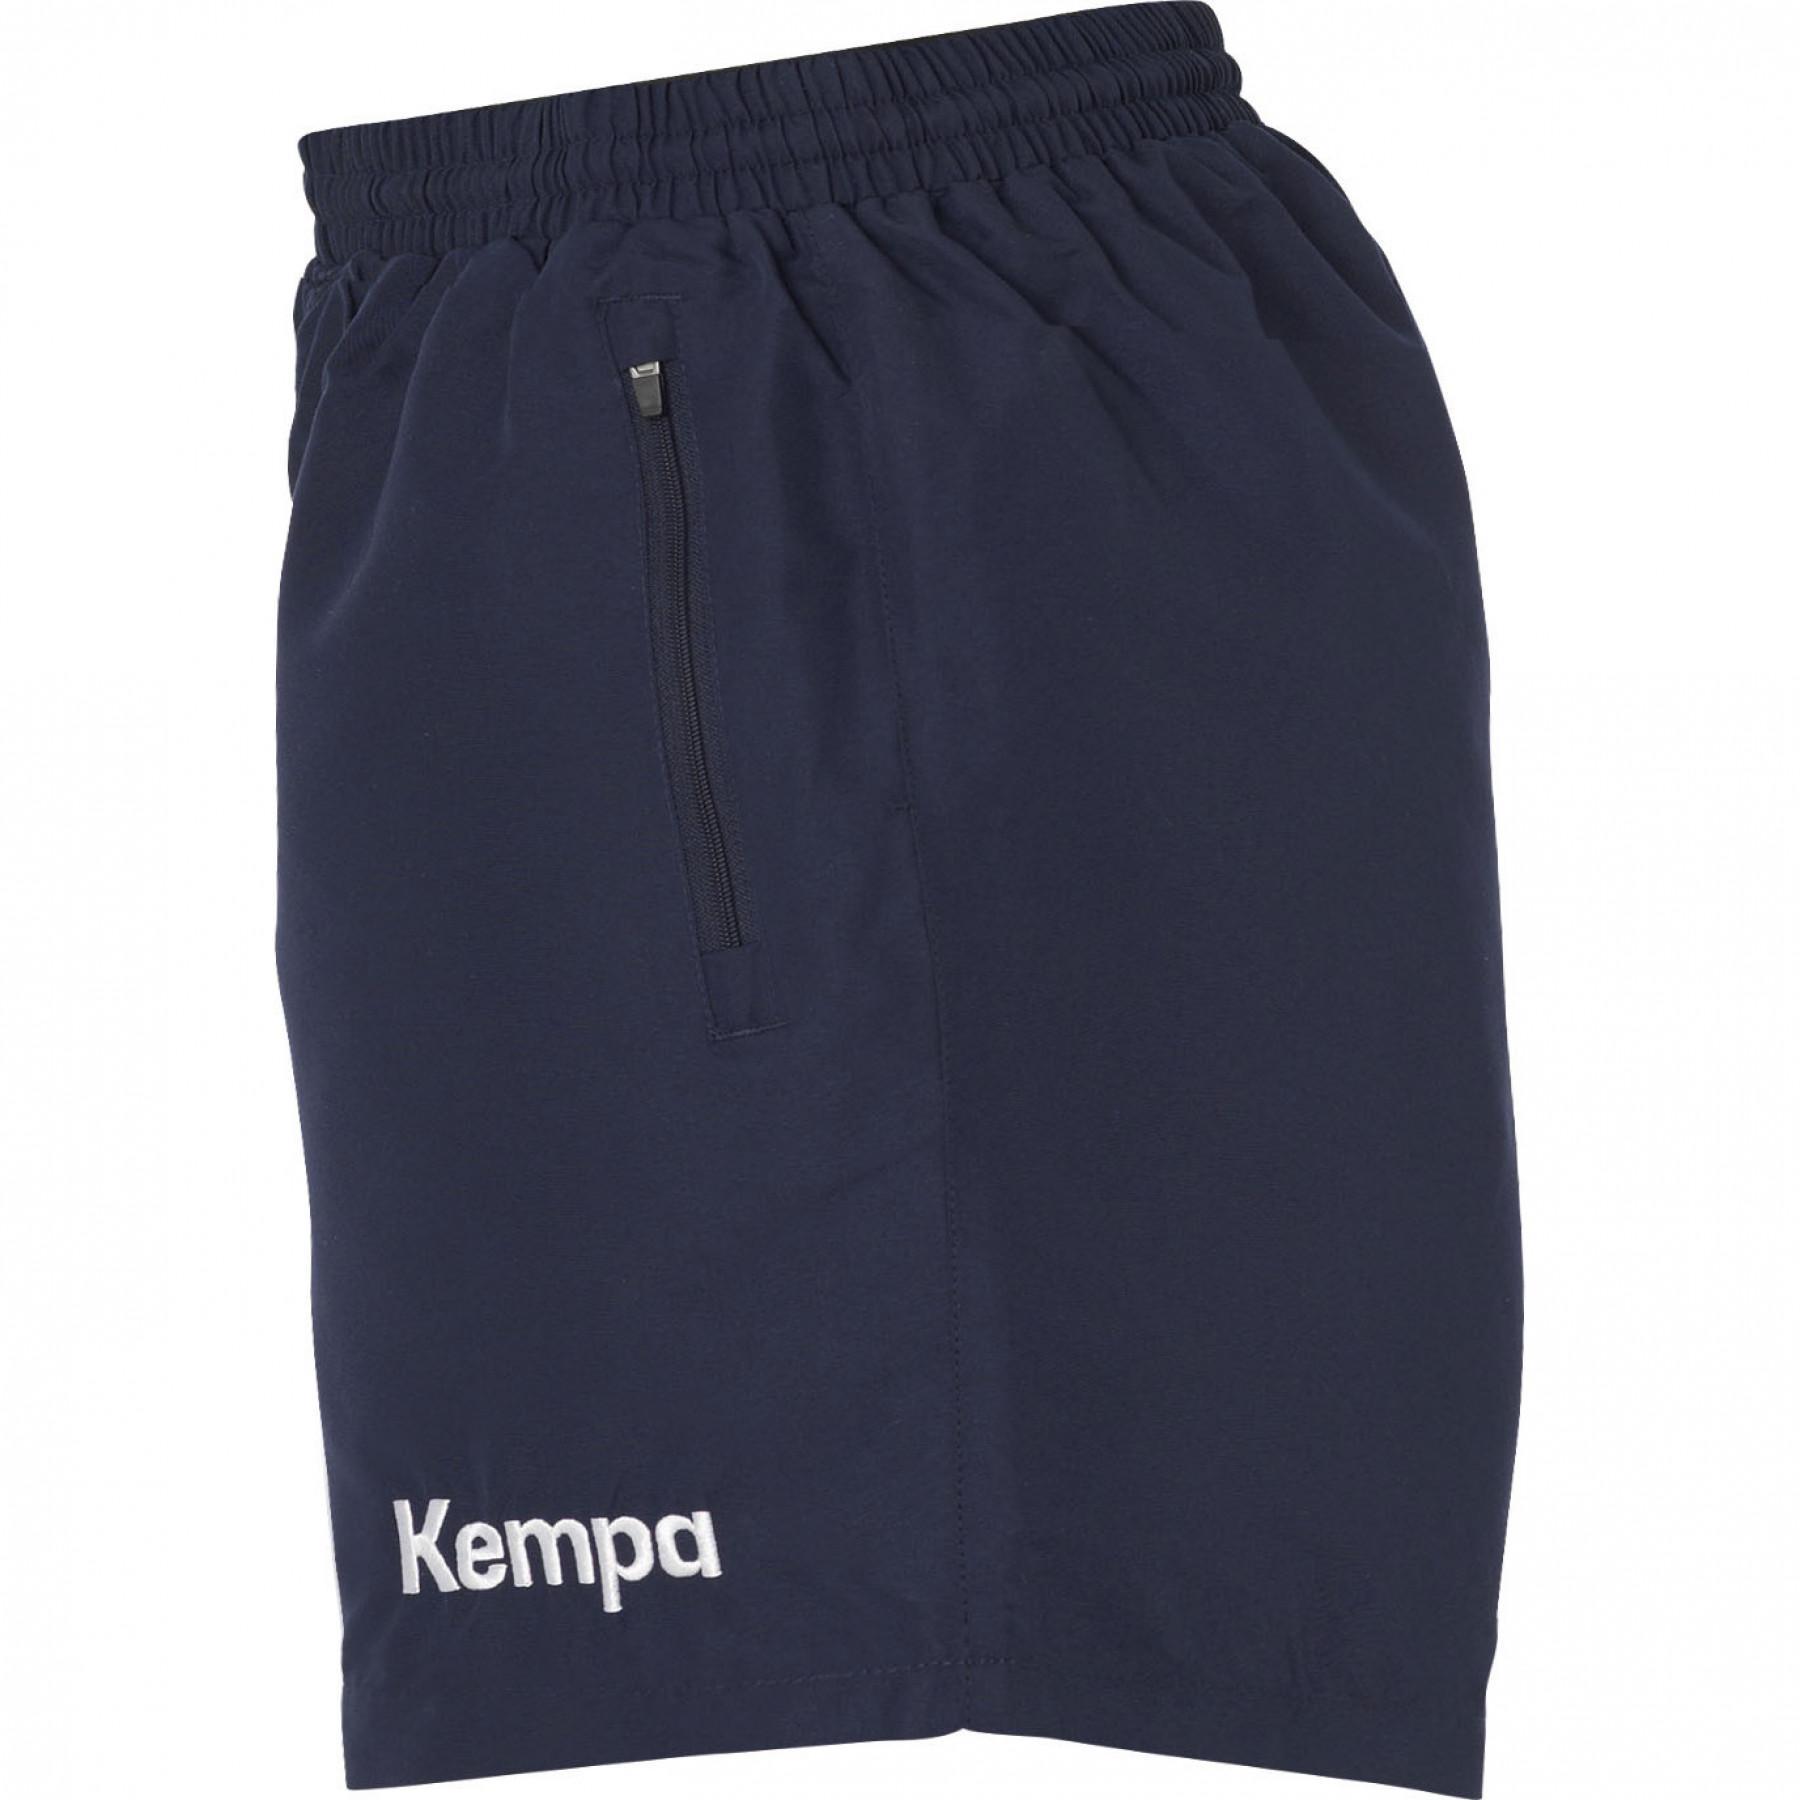 Pantalones cortos de mujer Kempa Woven